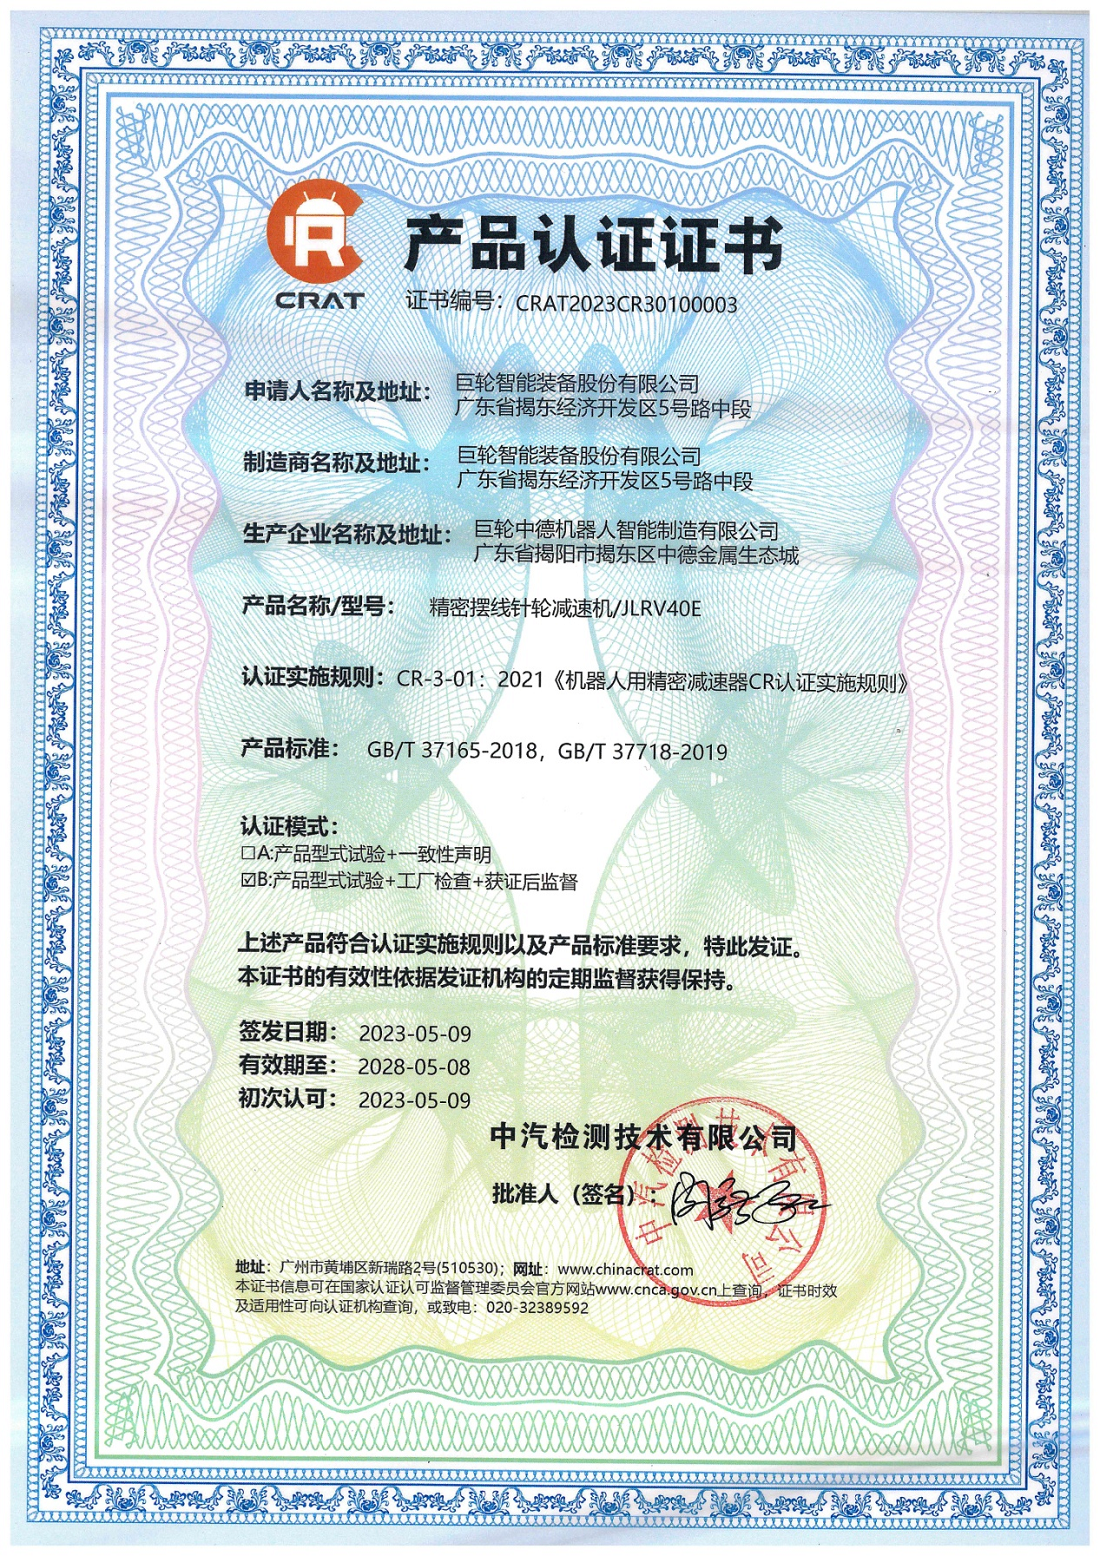 十年磨一剑，砥砺成大器 —— 888.3net新浦京游戏RV减速器首家国产通过CR产品认证